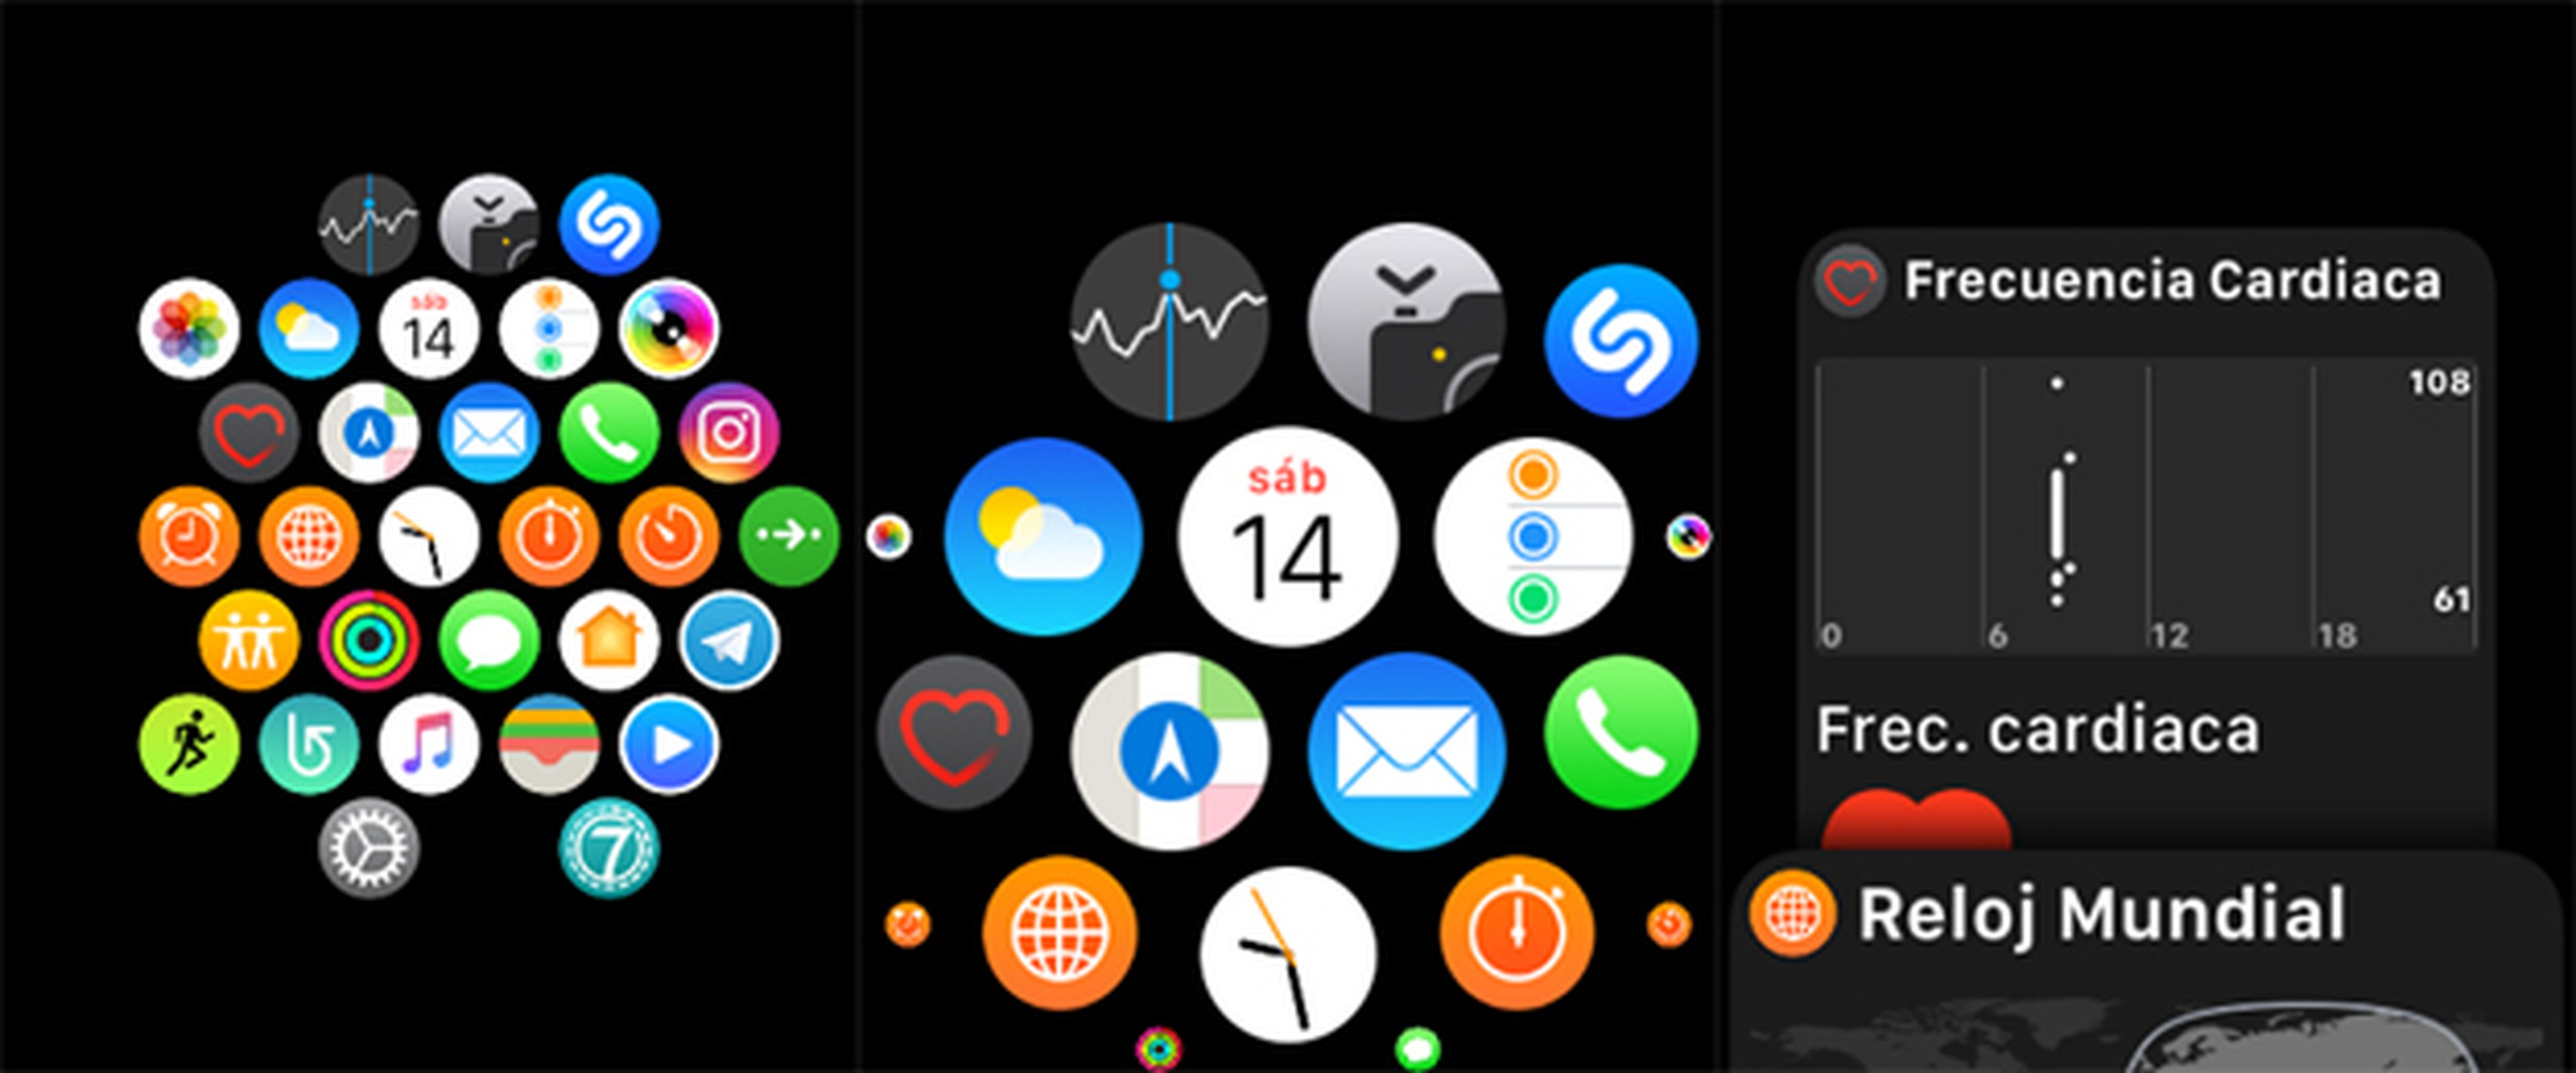 Las aplicaciones lucen un aspecto tal que así en el reloj de Apple